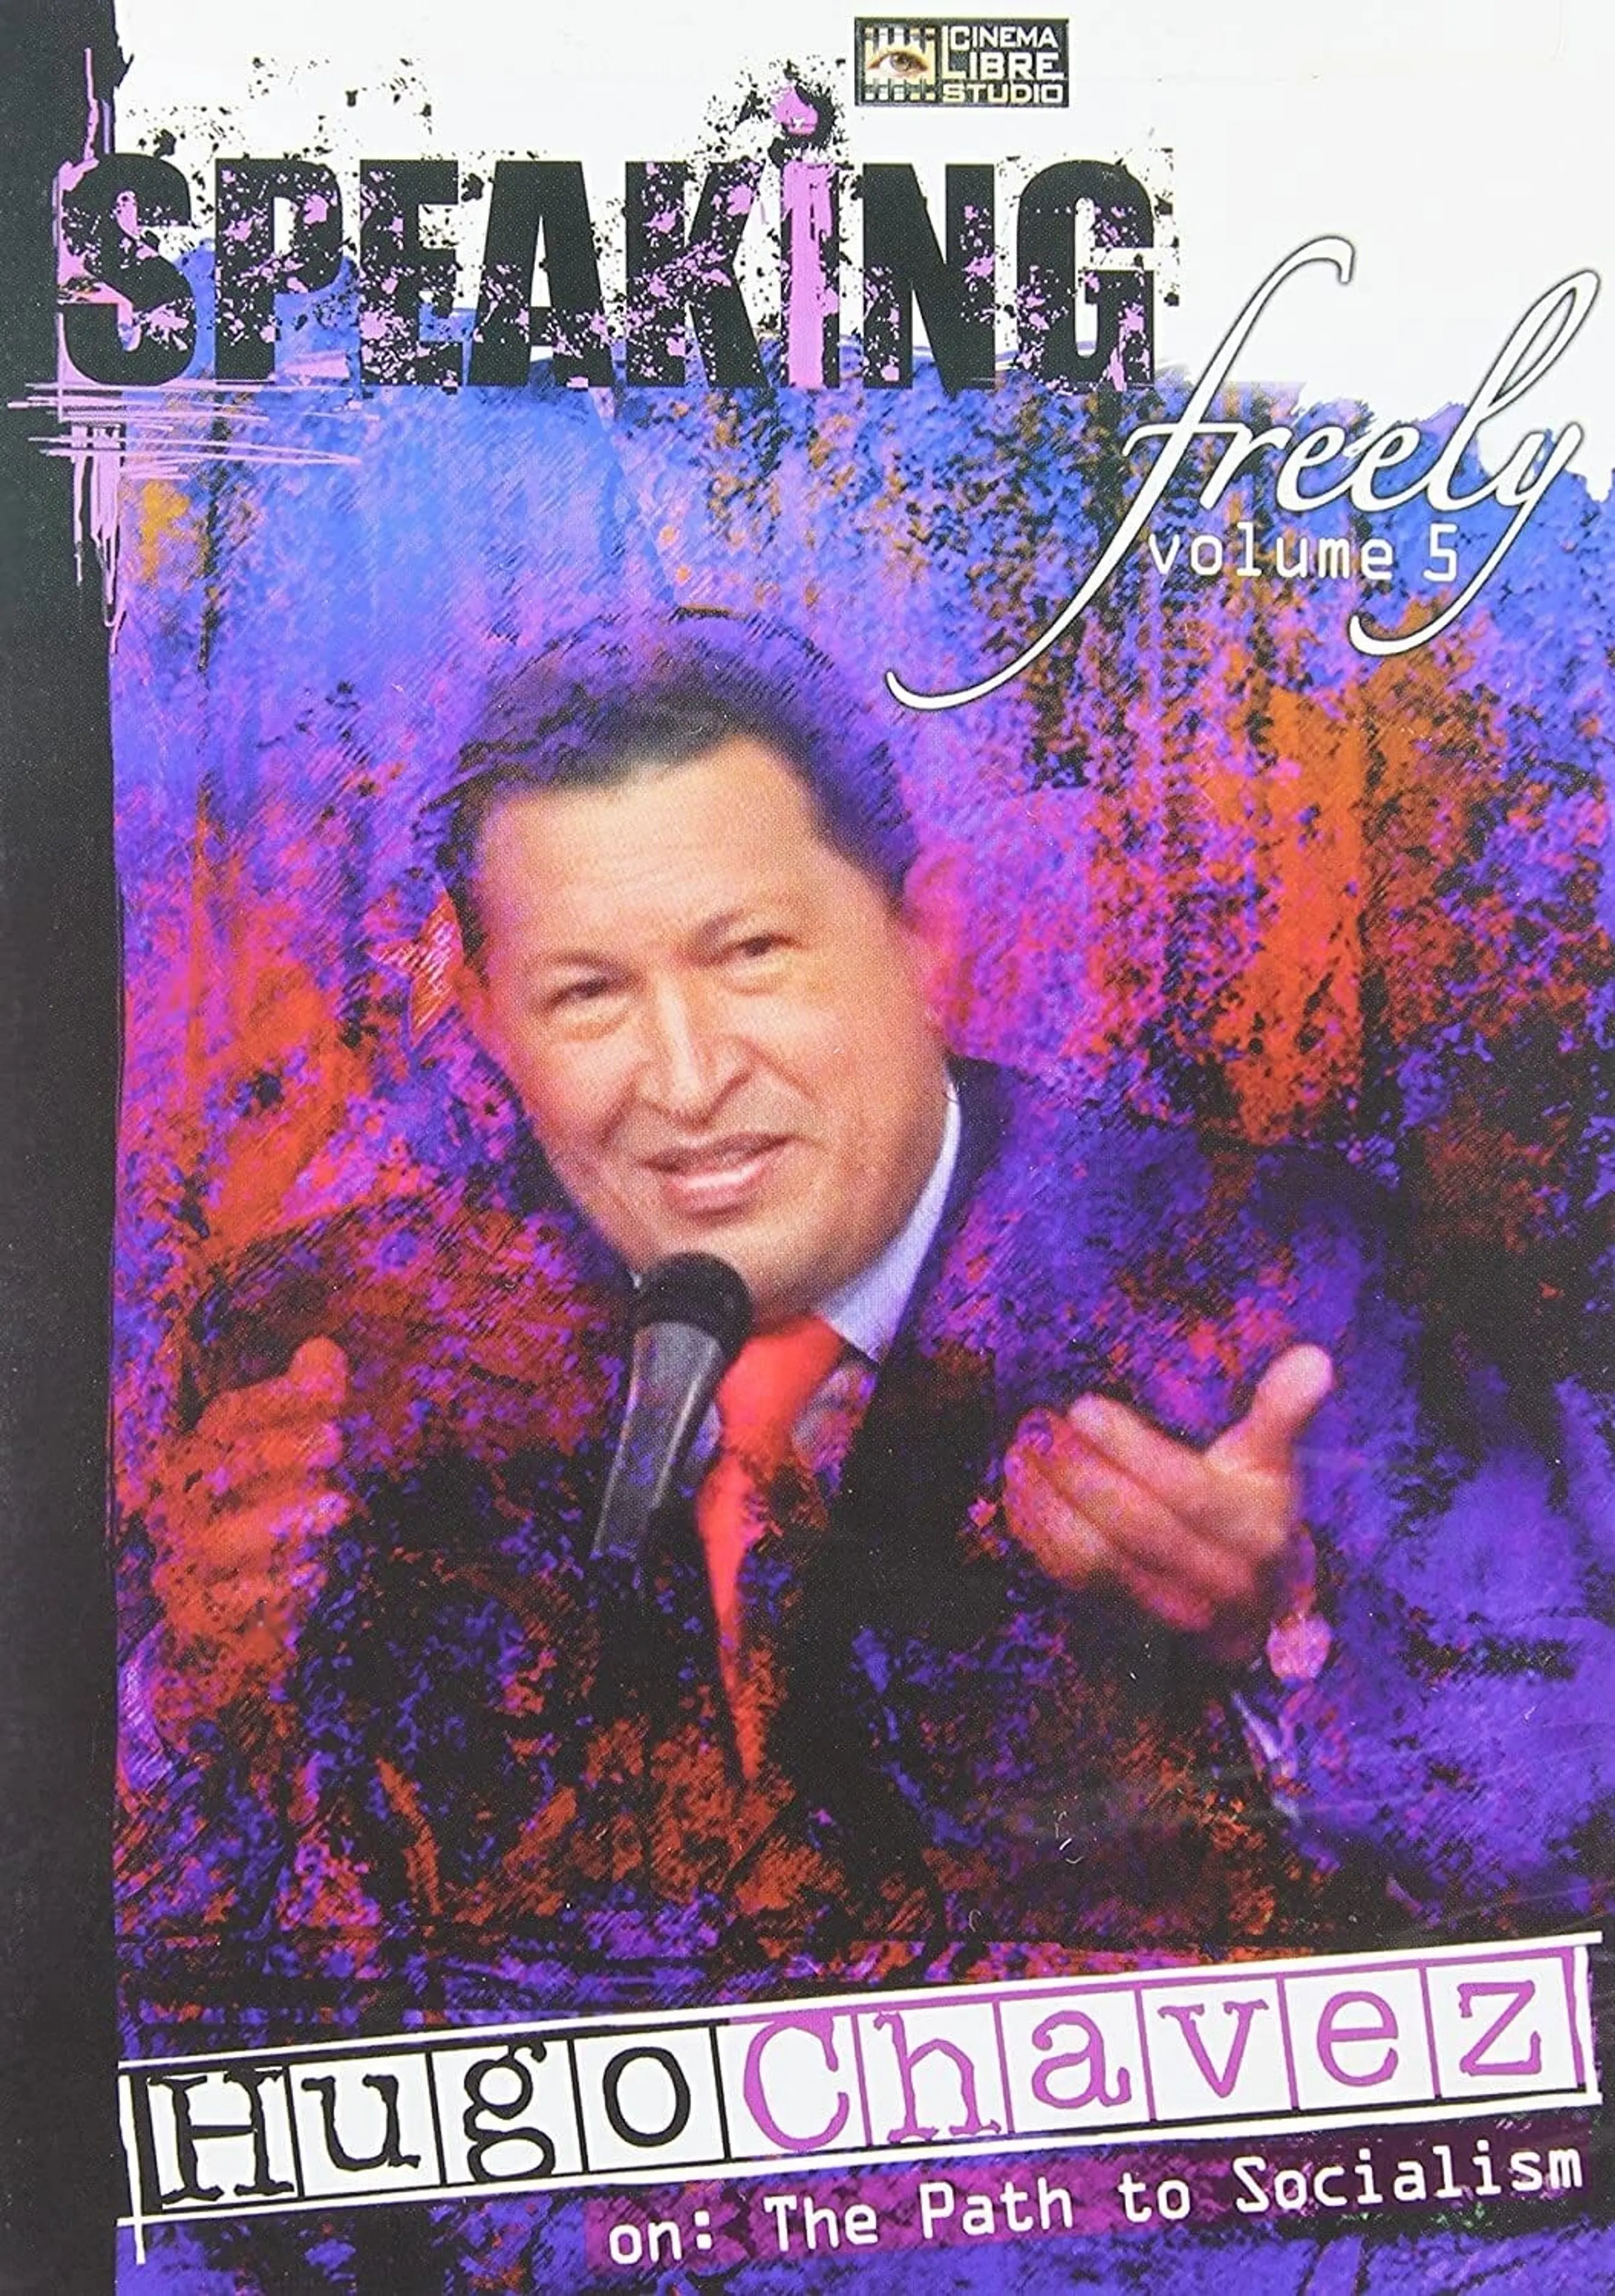 Speaking Freely Volume 5: Hugo Chavez